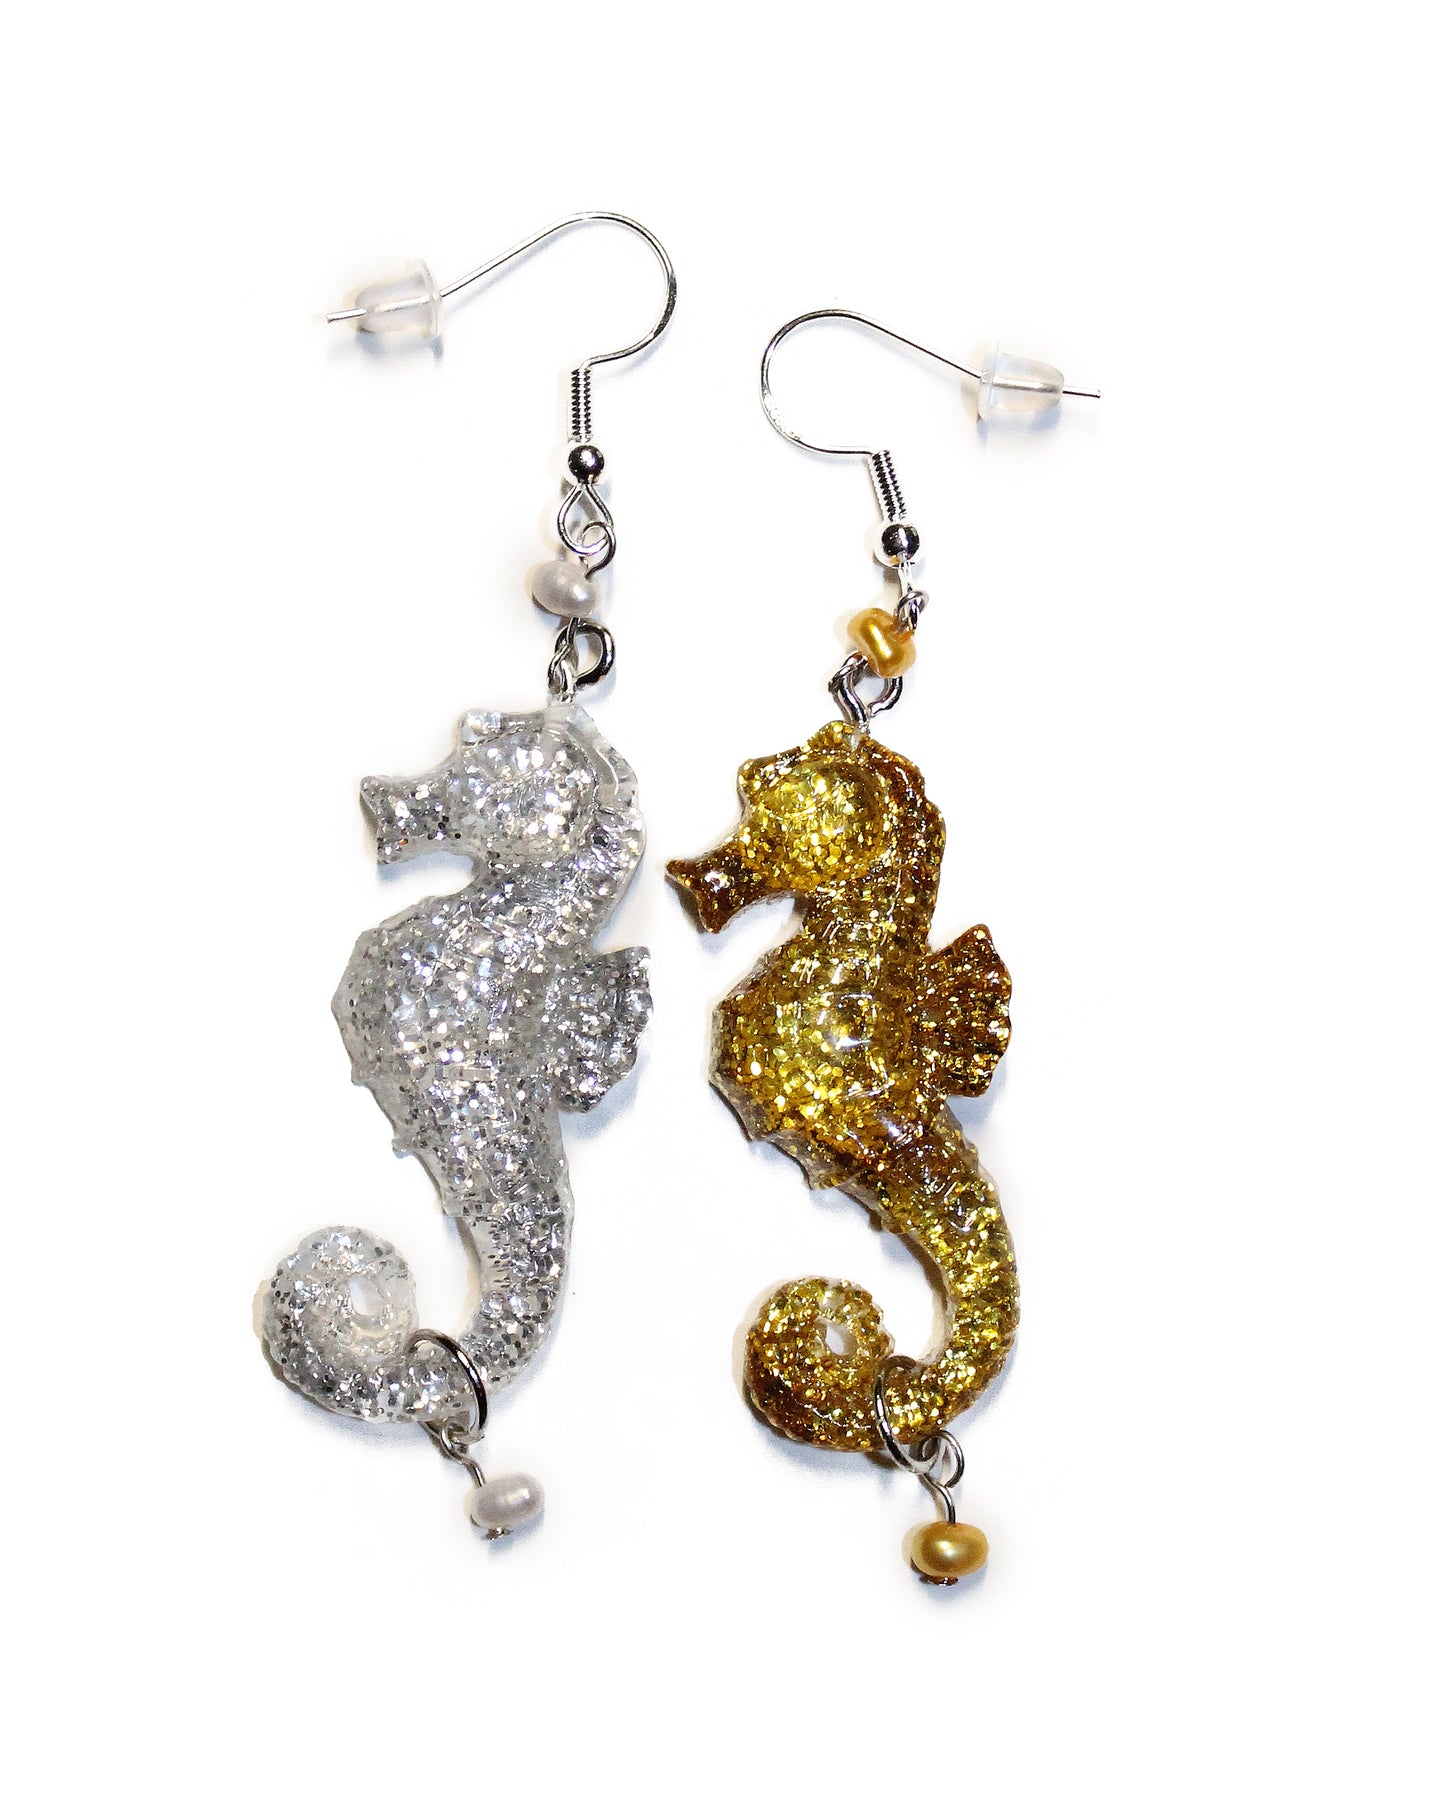 Seahorse Love Earrings